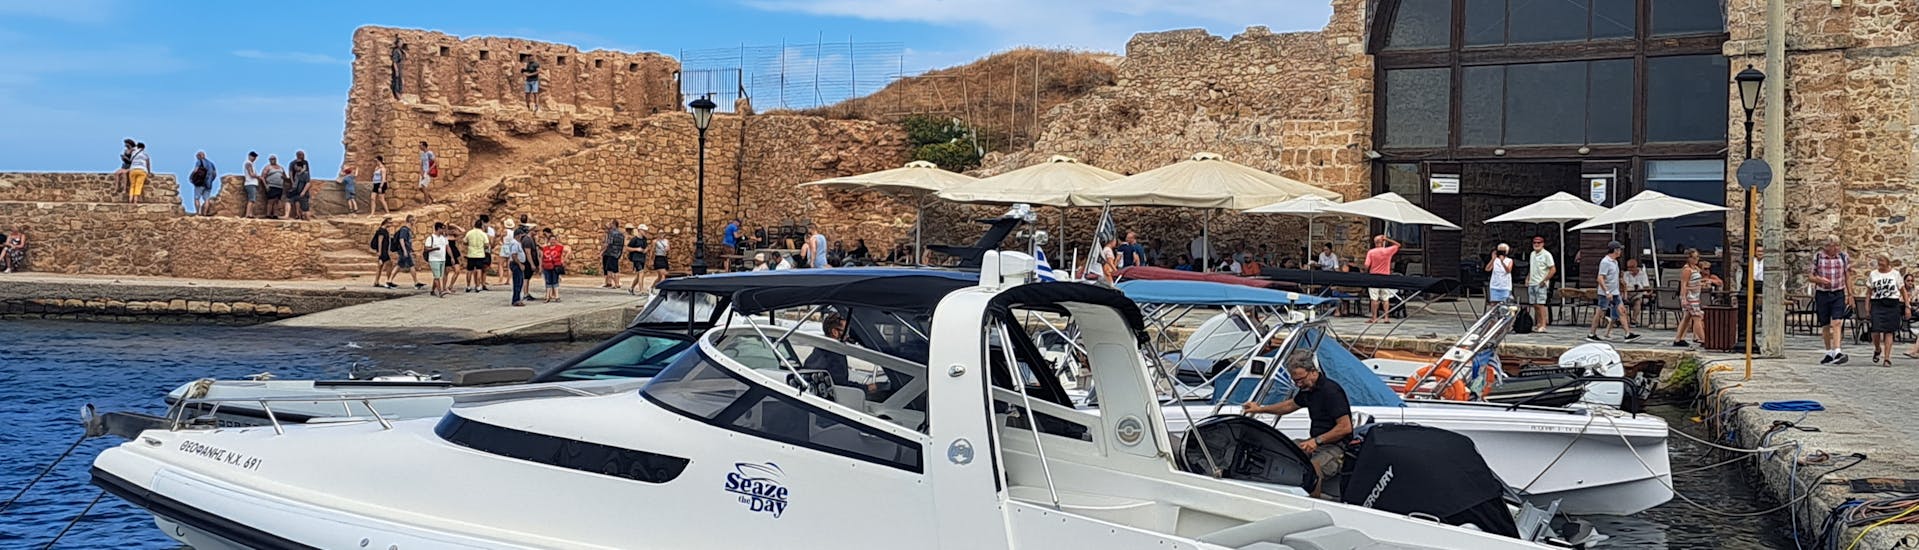 Foto van een RIB boot op het water tijdens een boottocht georganiseerd door SEAze The Day Kreta.